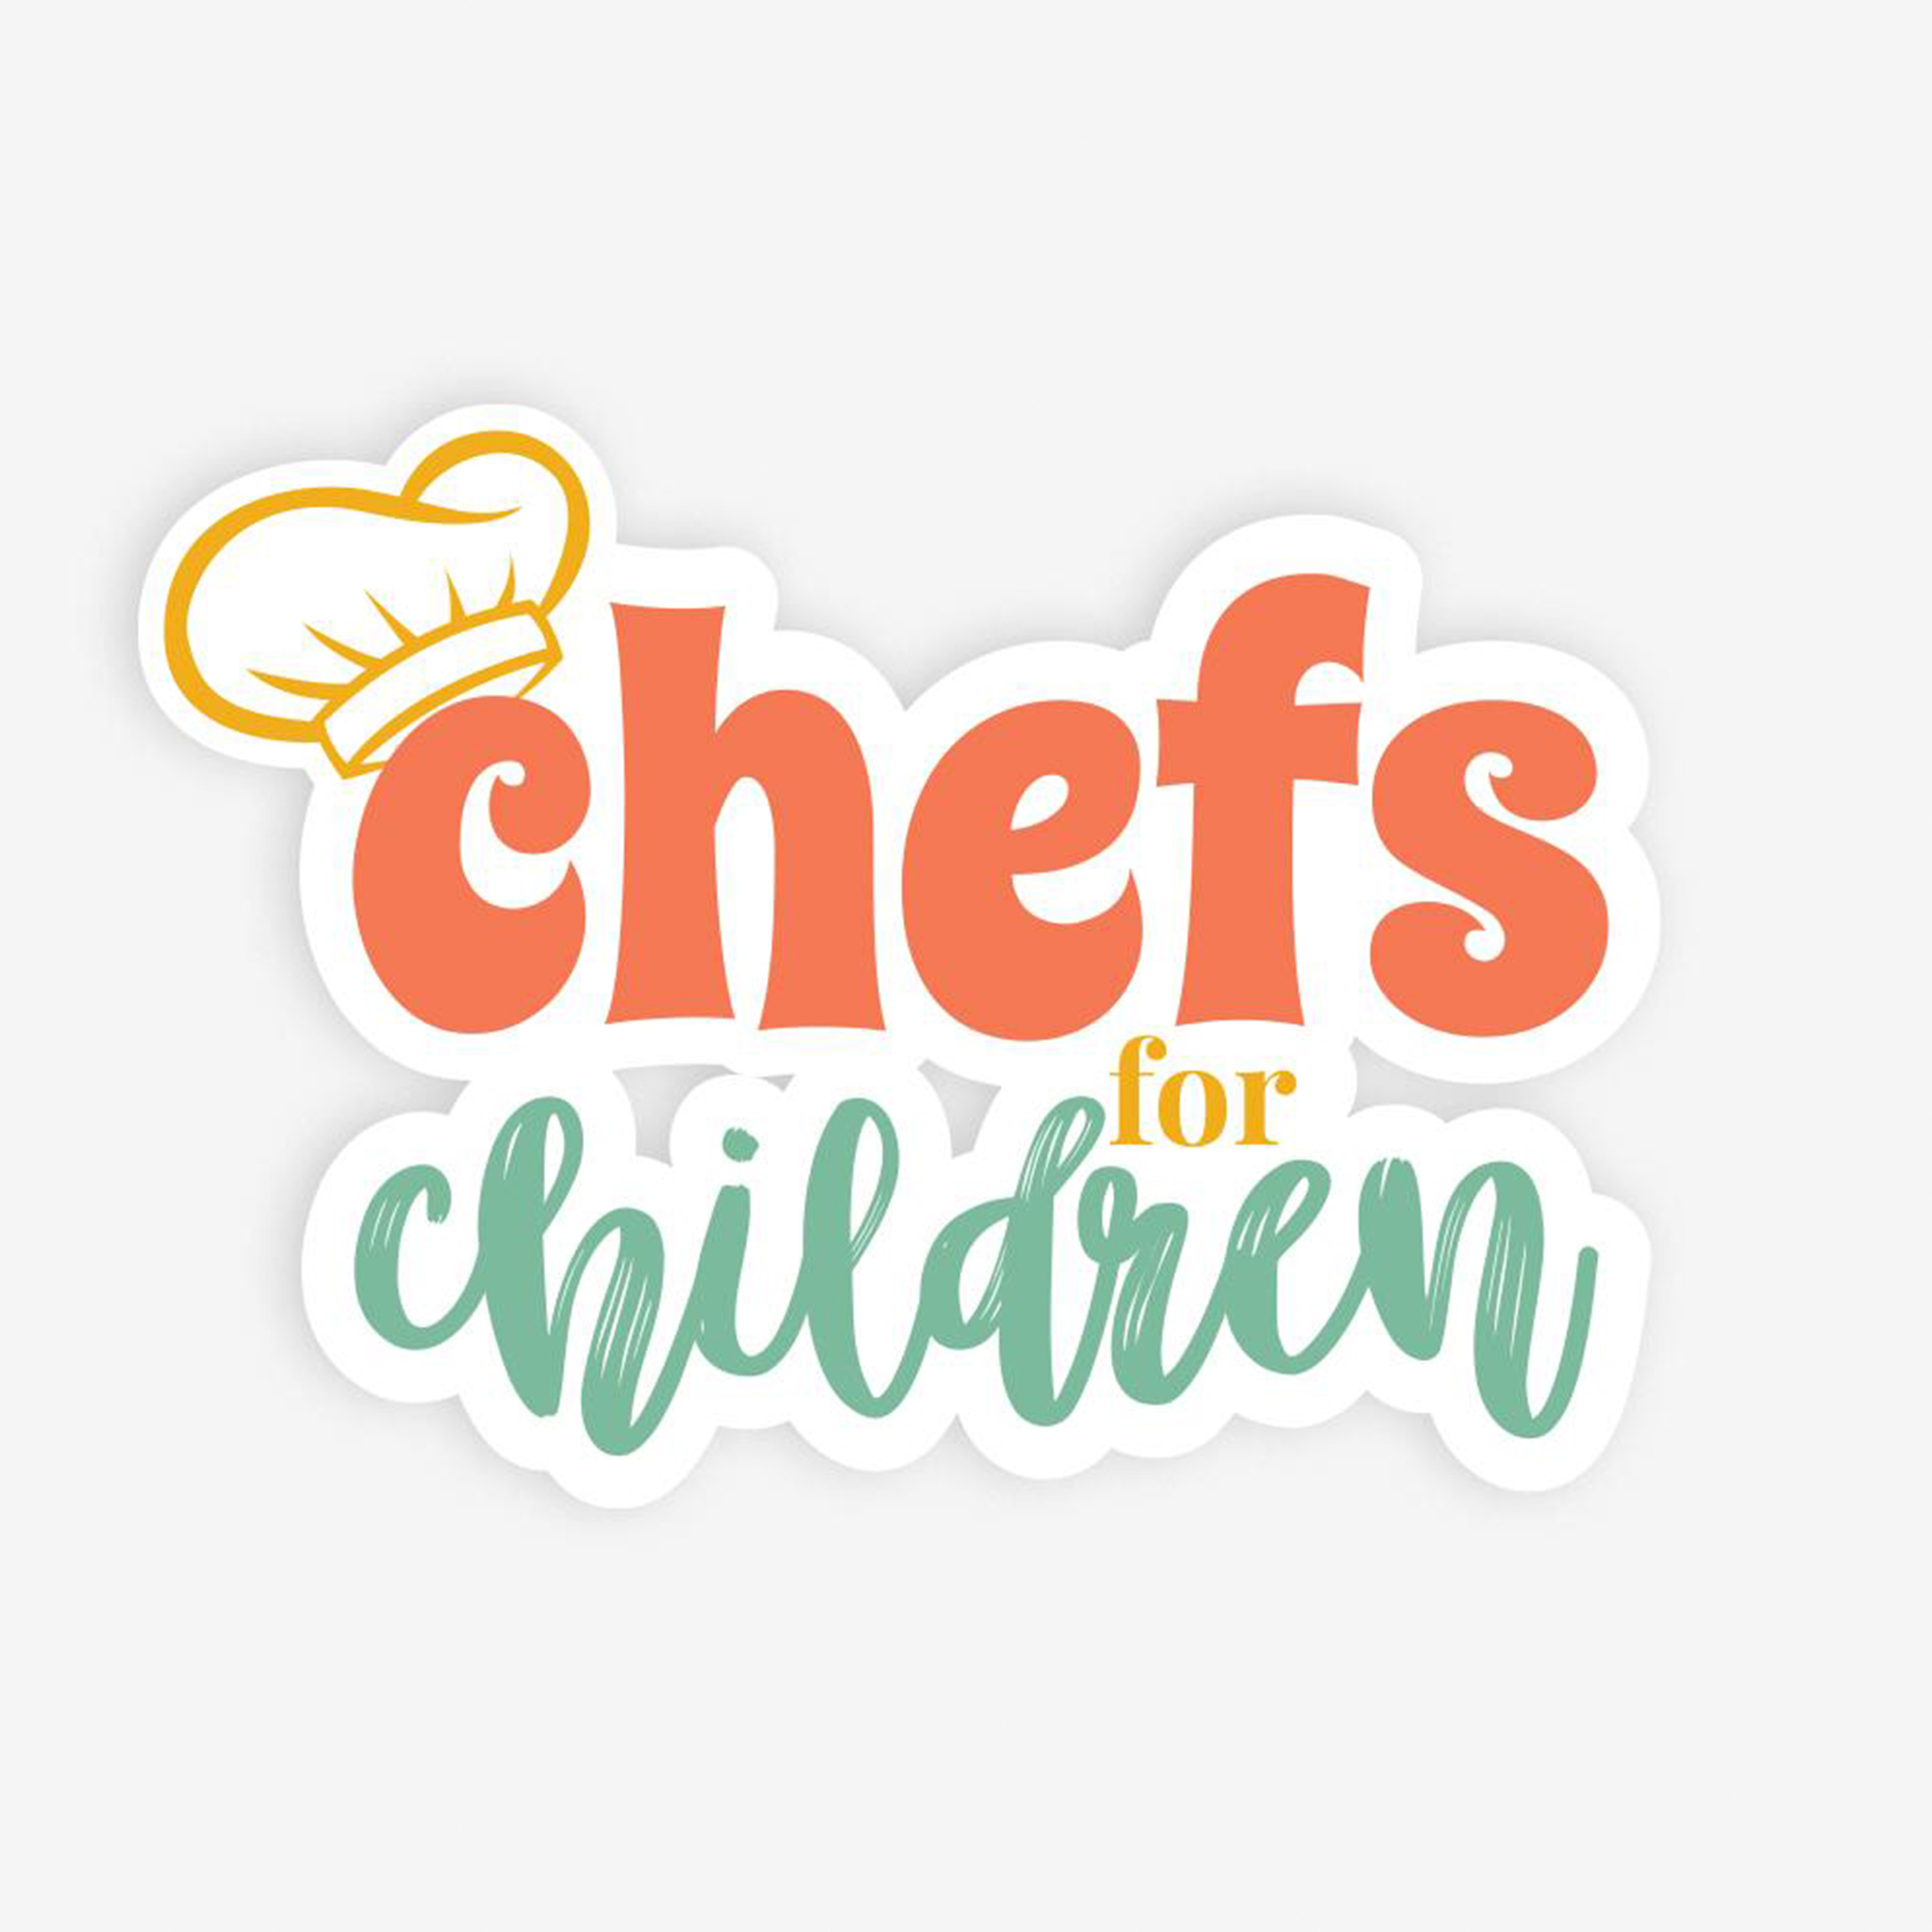 CHEFS_FOR_CHILDREN